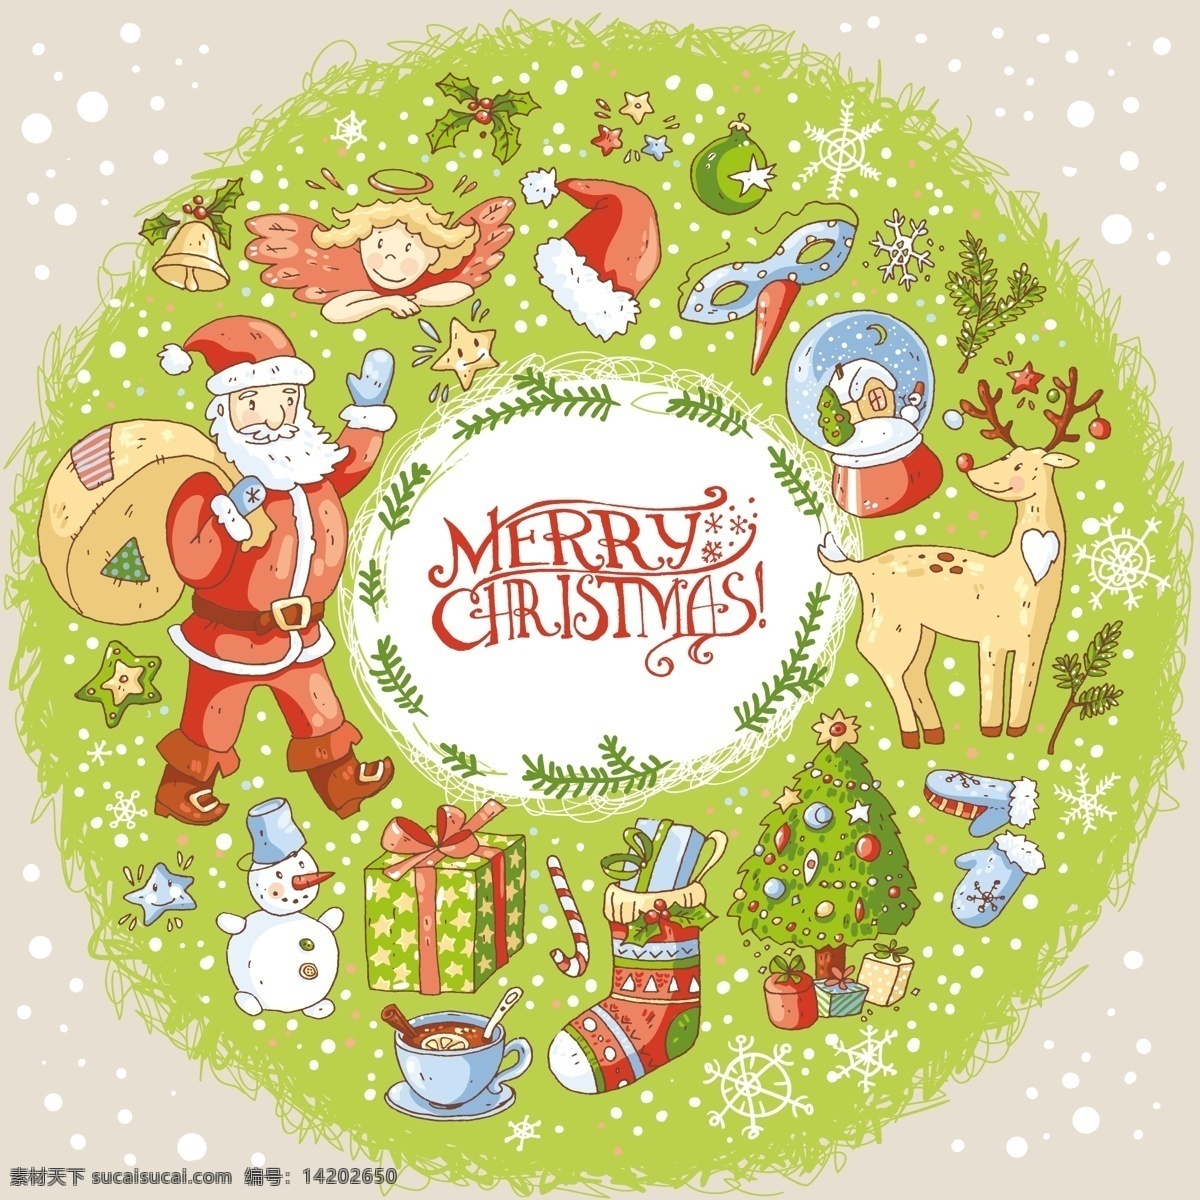 圣诞树 环 卡通 圣诞节 矢量 背景 元素 绿色 装饰 雪花 圣诞老人 帽子 雪人 卡通人物 礼物 鞋子 手套 麋鹿 节日背景 礼盒背景 平面设计